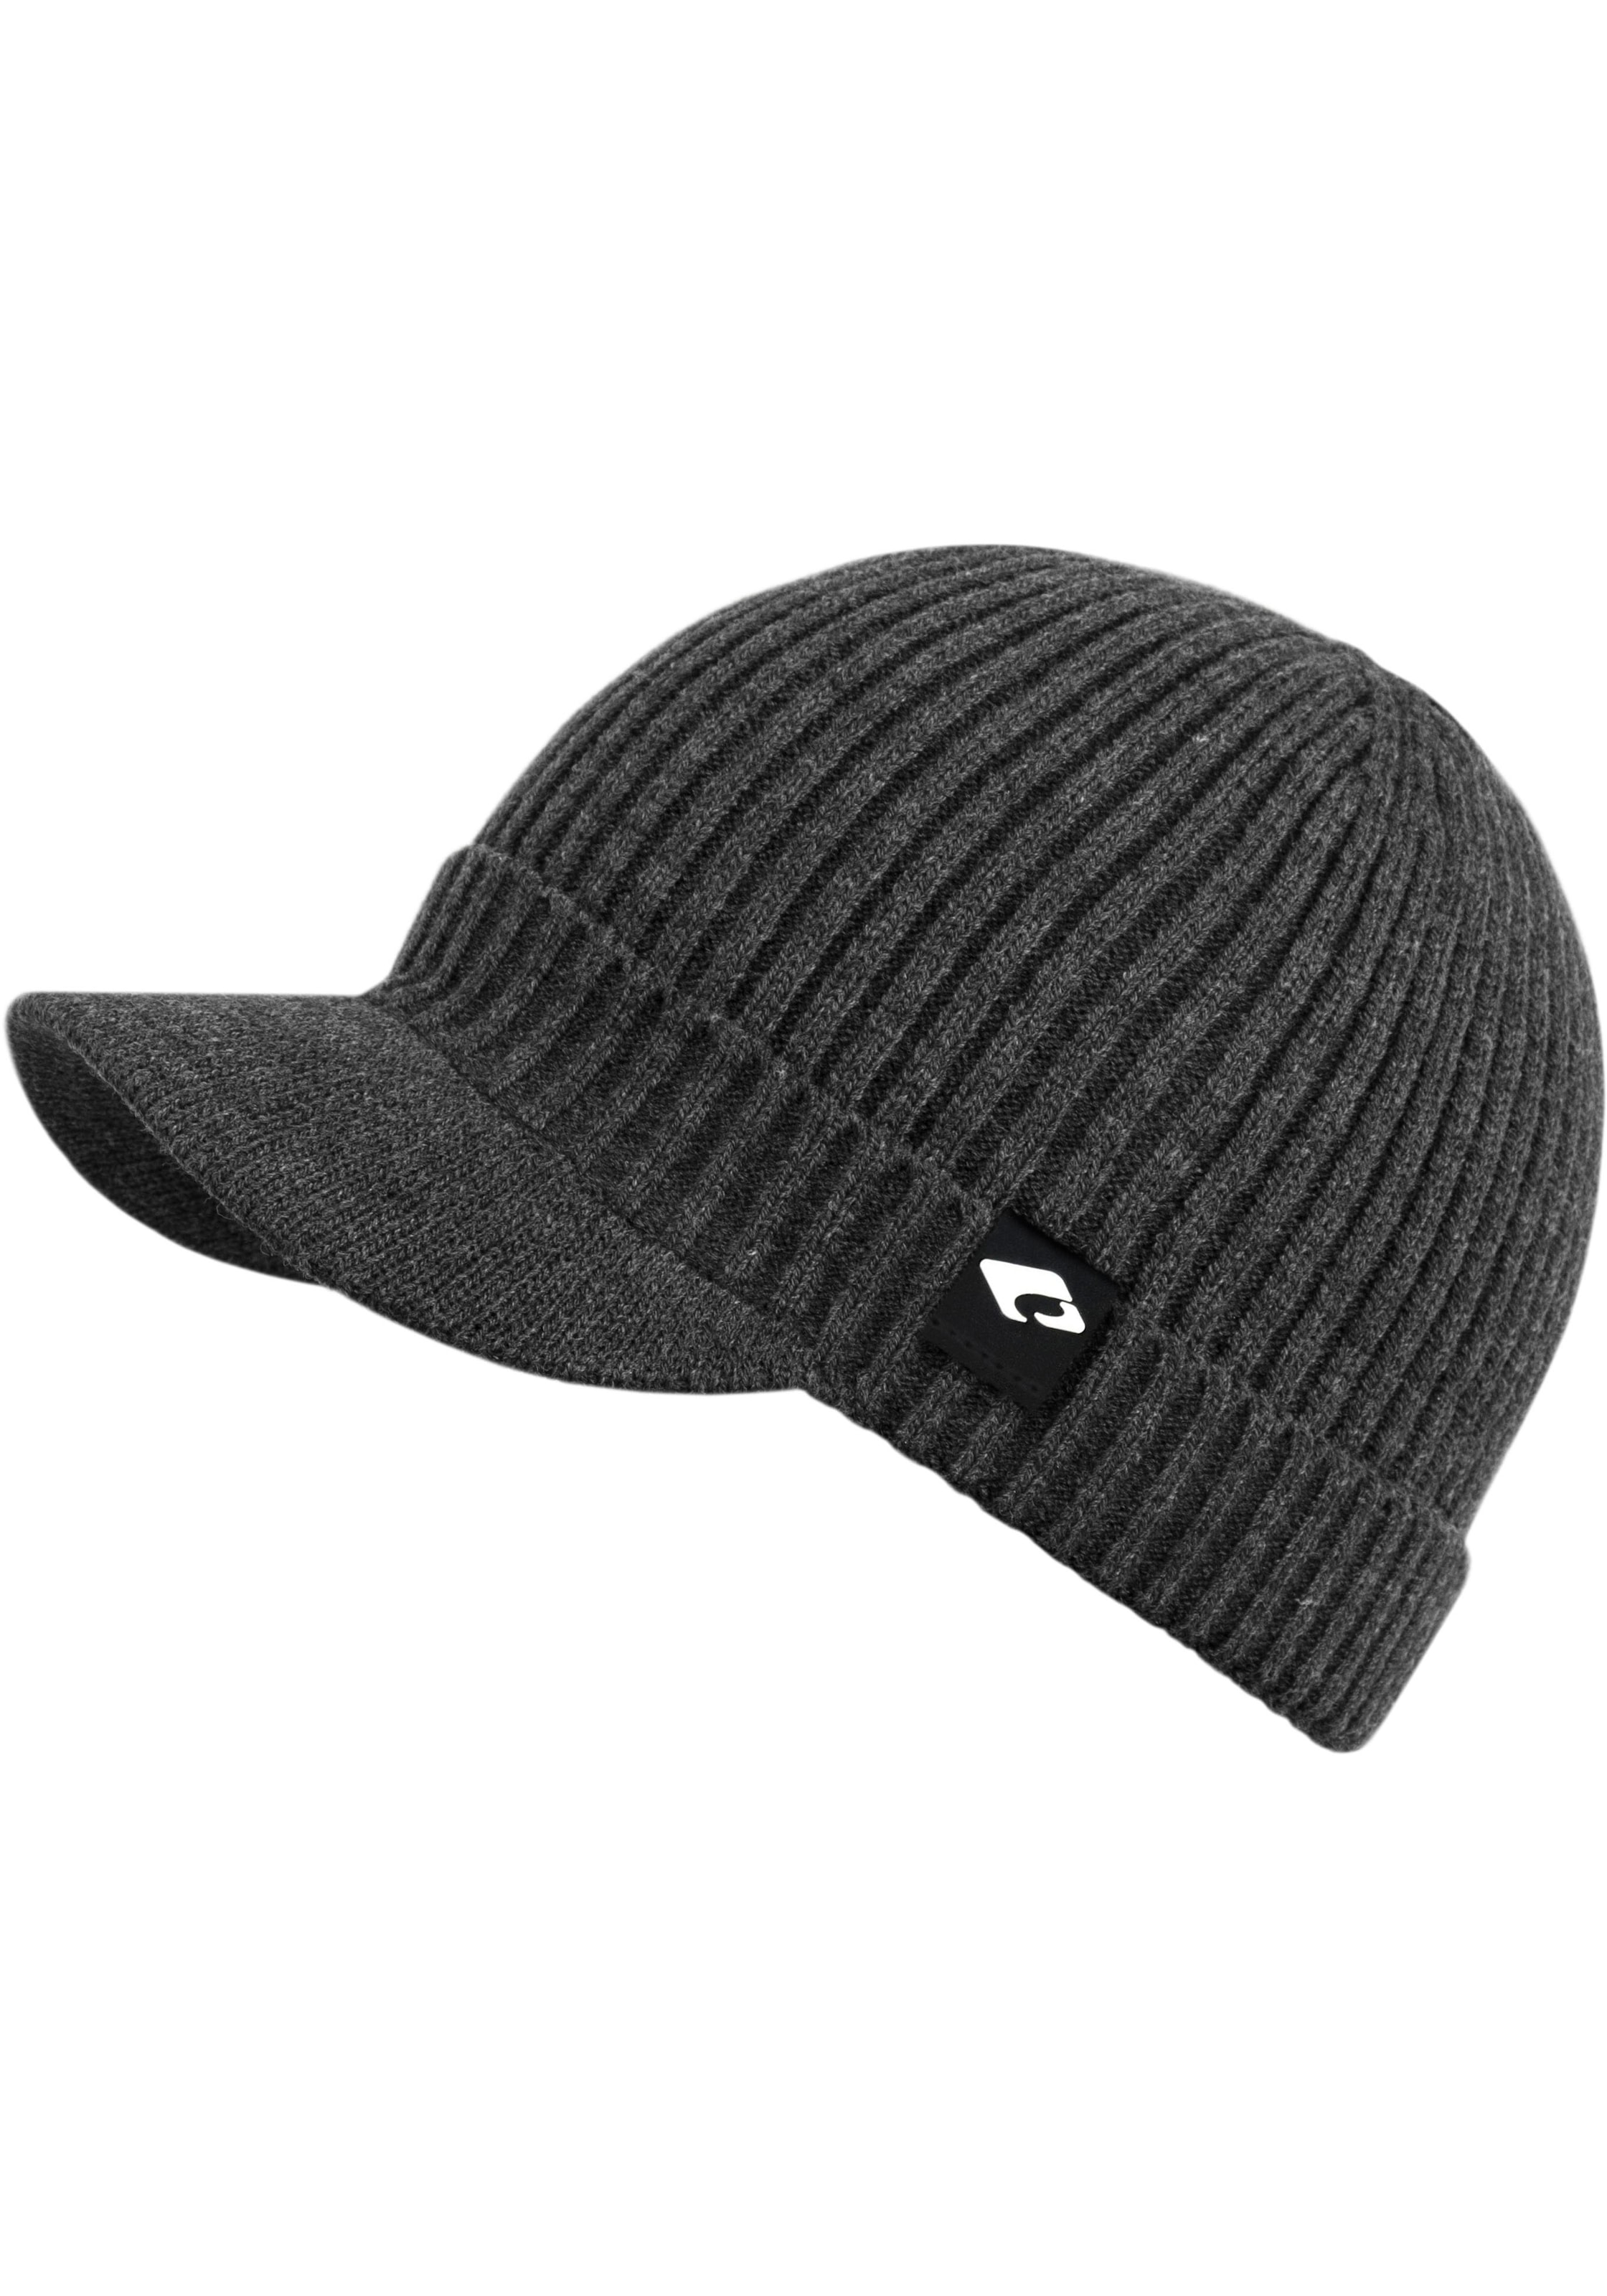 chillouts Strickmütze online shoppen bei Hat«, OTTO »Benno Hat Benno